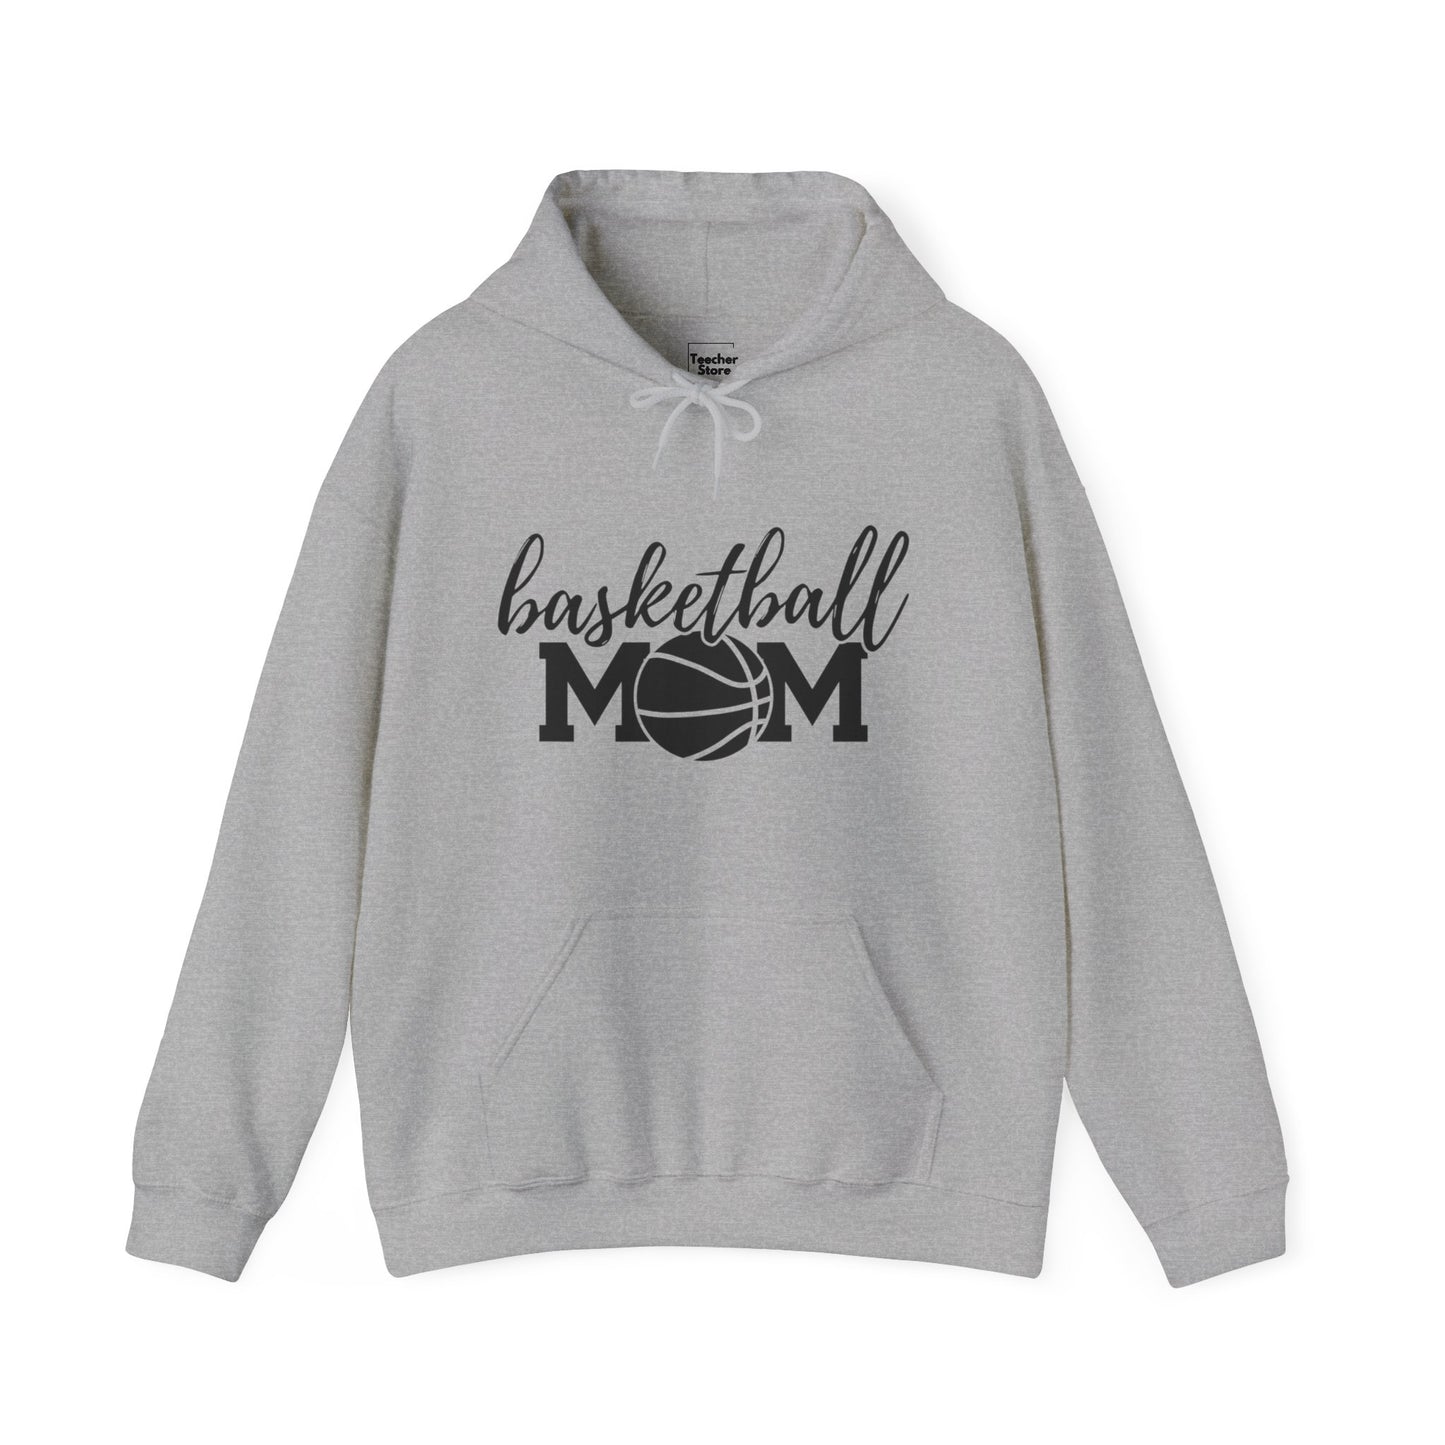 Basketball MOM Hooded Sweatshirt